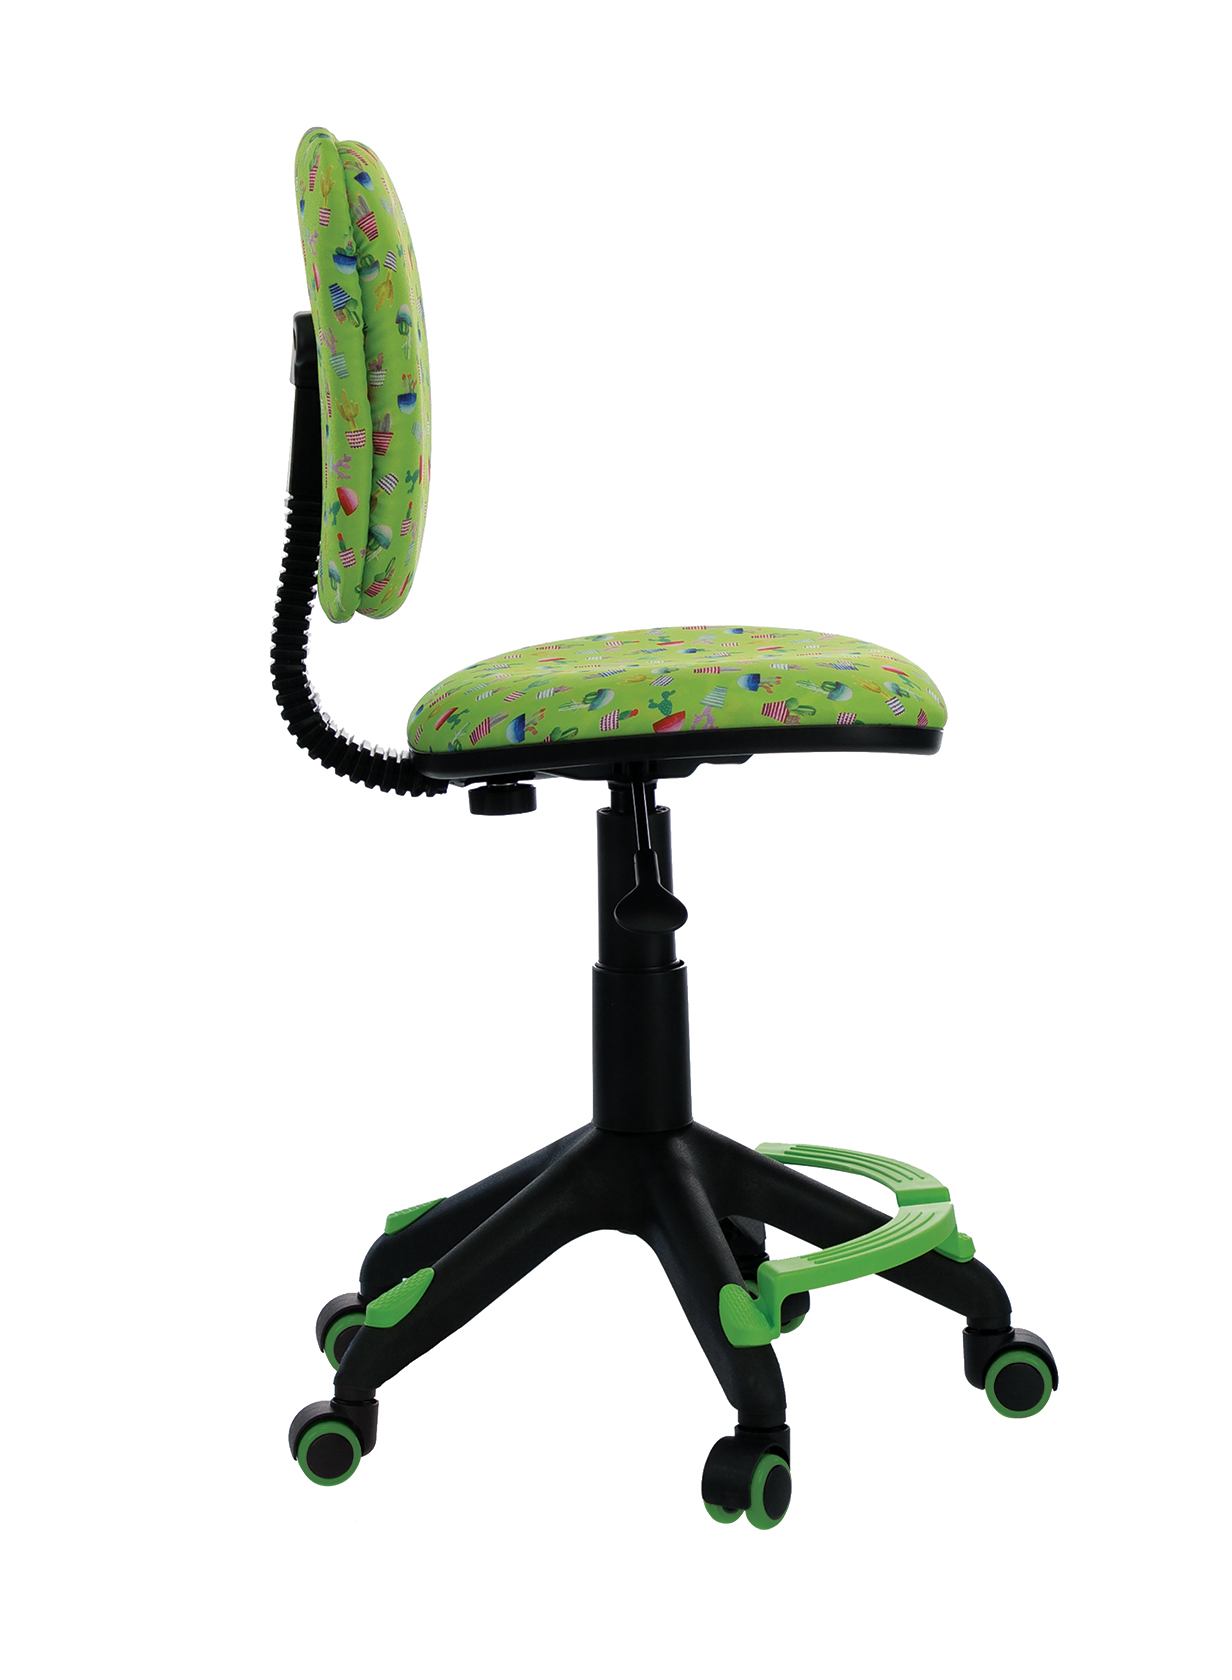 кресла для дома и офиса детские